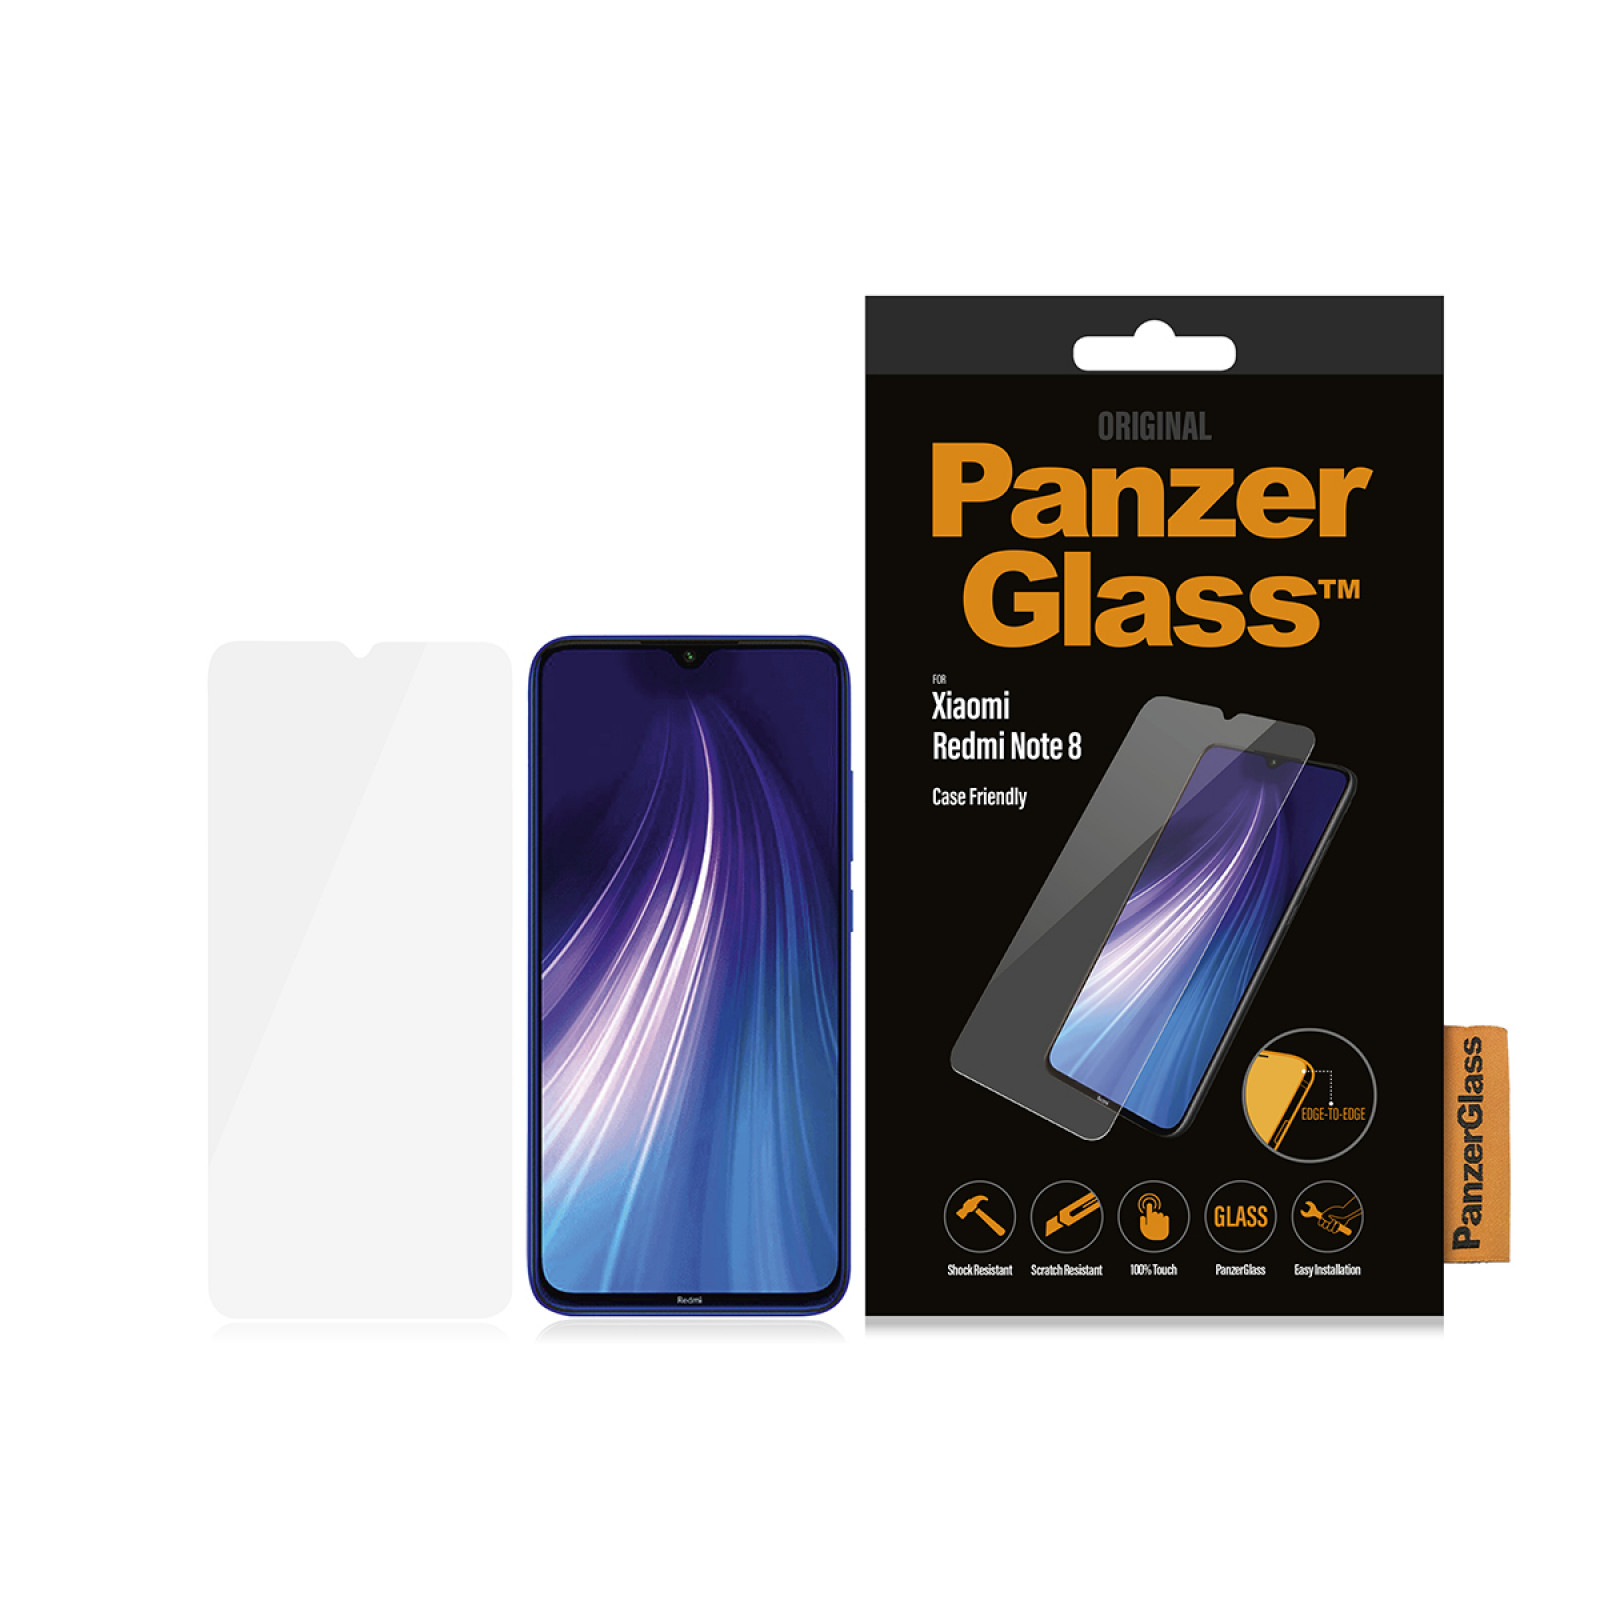 Стъклен протектор PanzerGlass за Xiaomi Redmi Note 8 Case Friendly Прозрачен